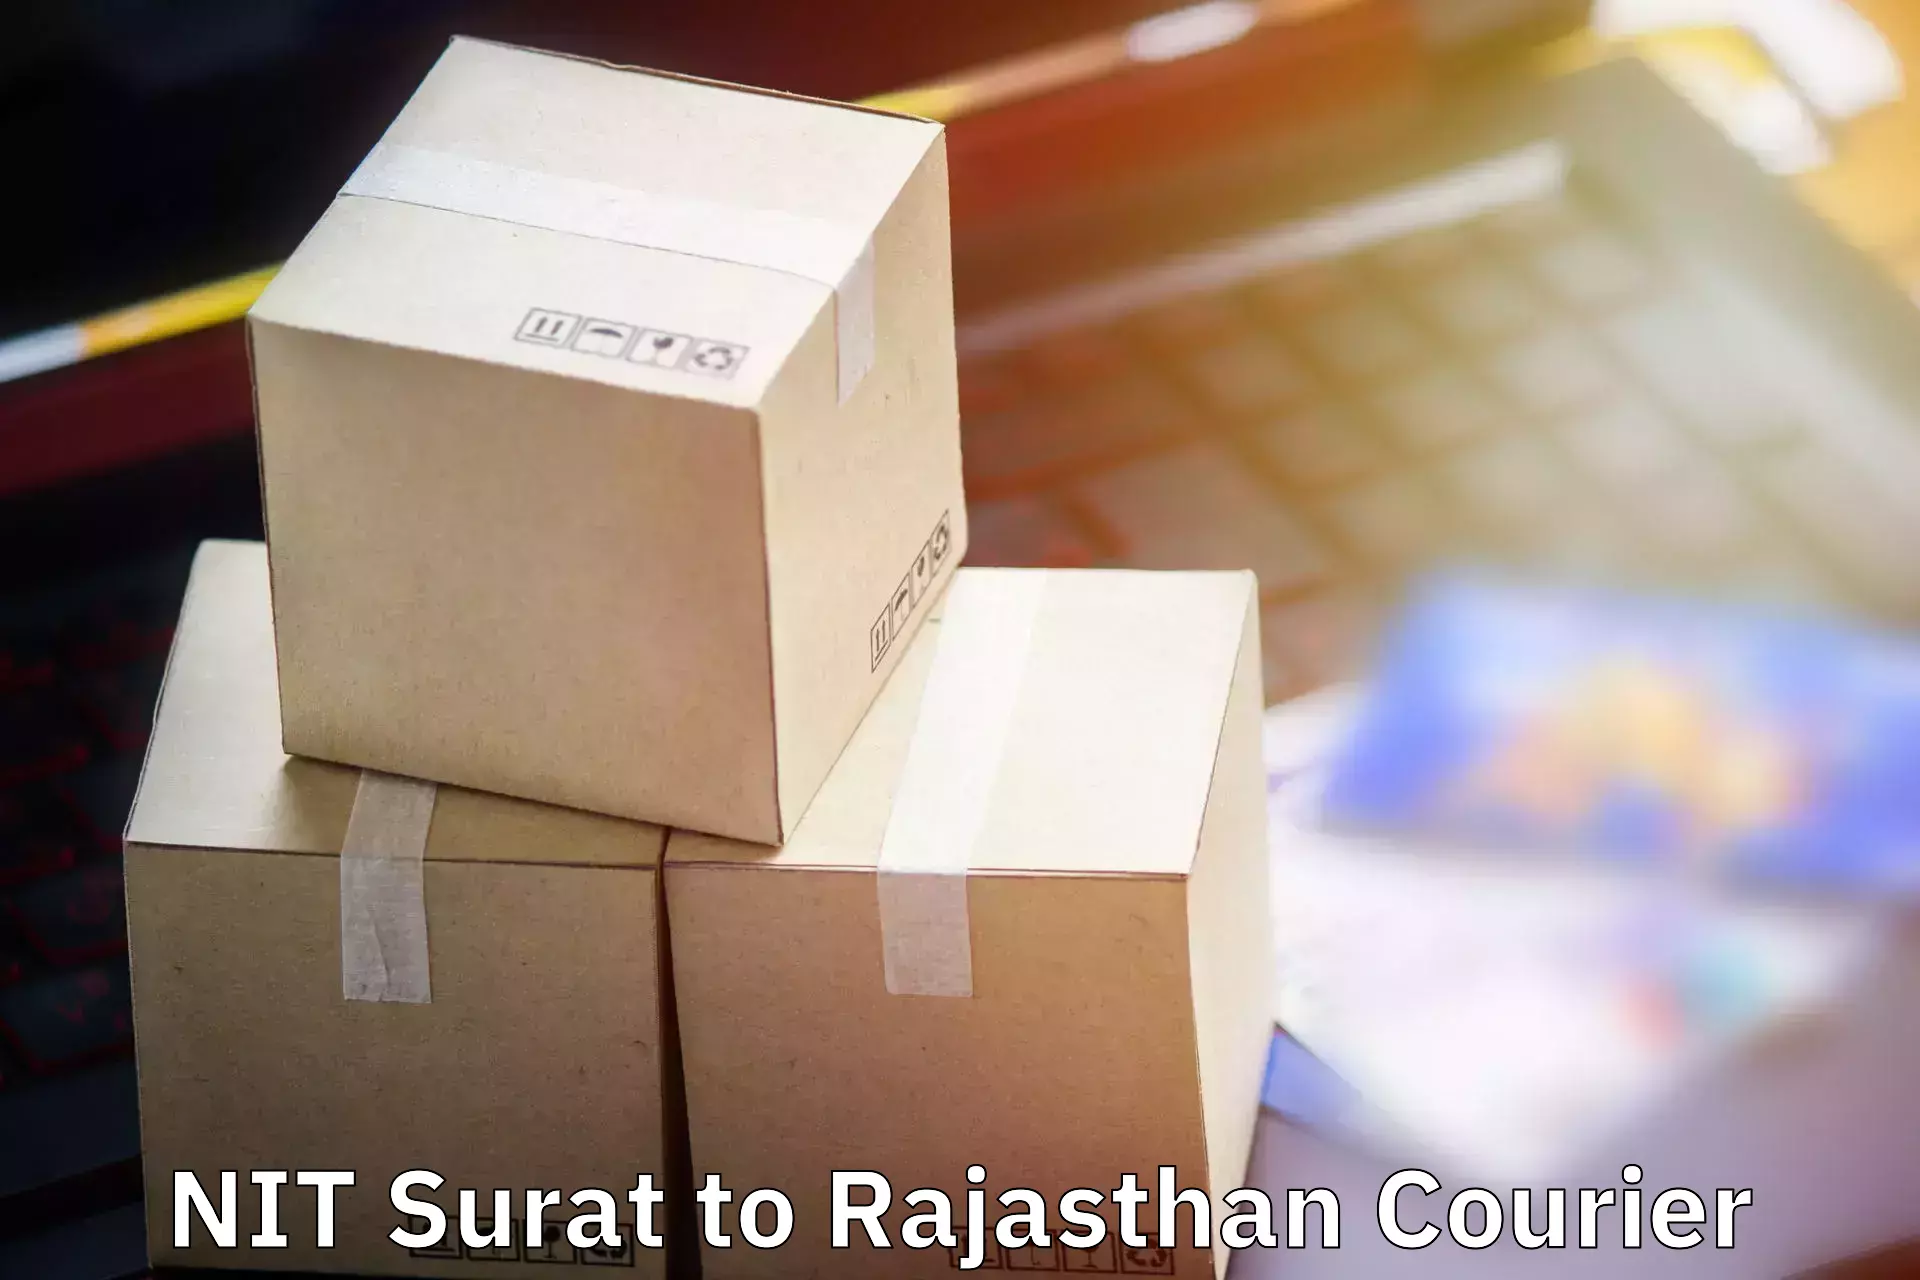 Baggage shipping quotes NIT Surat to Nasirabad